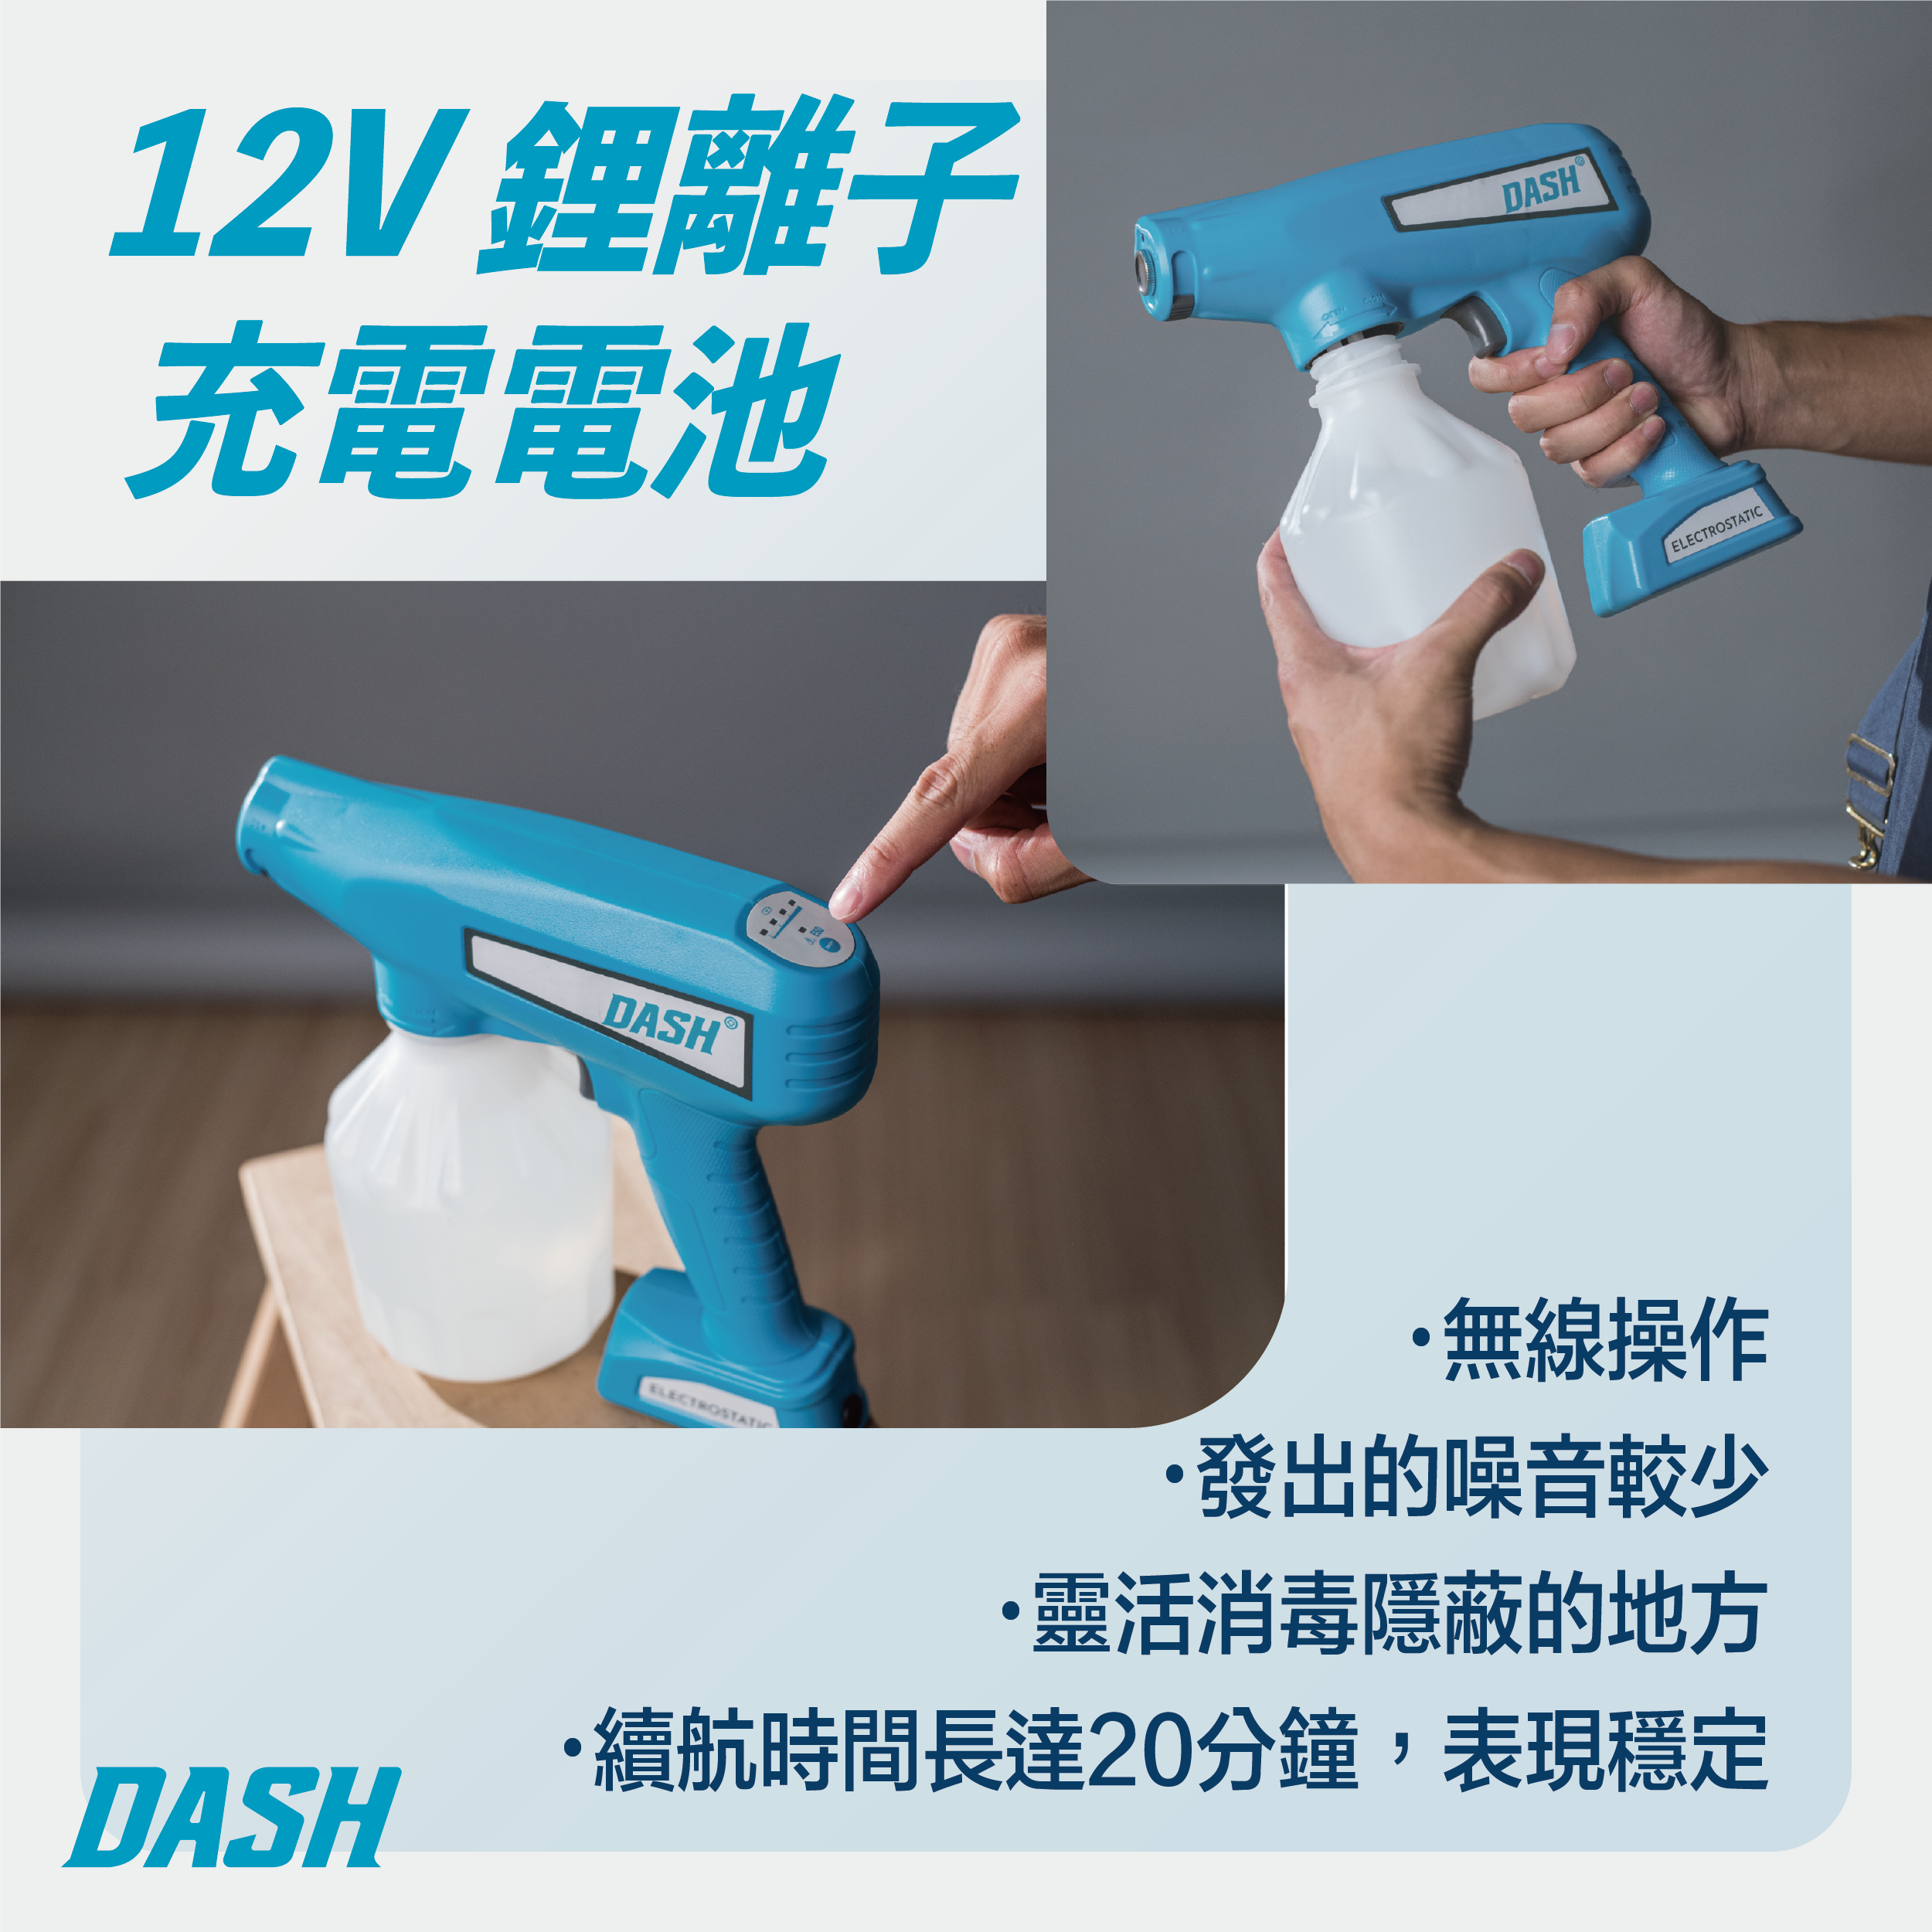 DASH DF003 Household Grade Particle Disinfection Gun